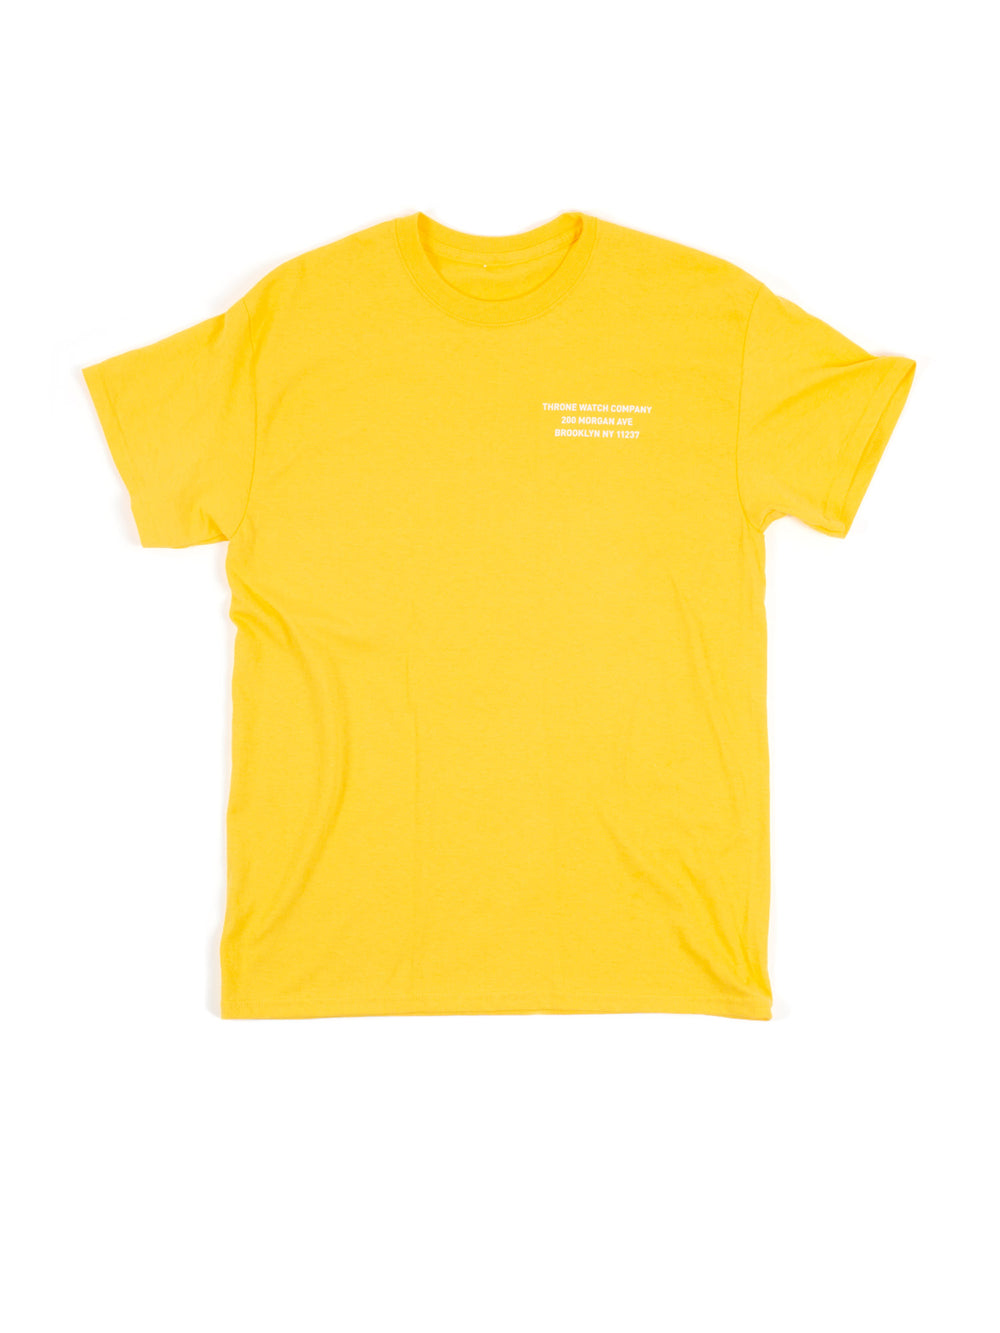 Address shirt in marigold - Address shirt in marigold